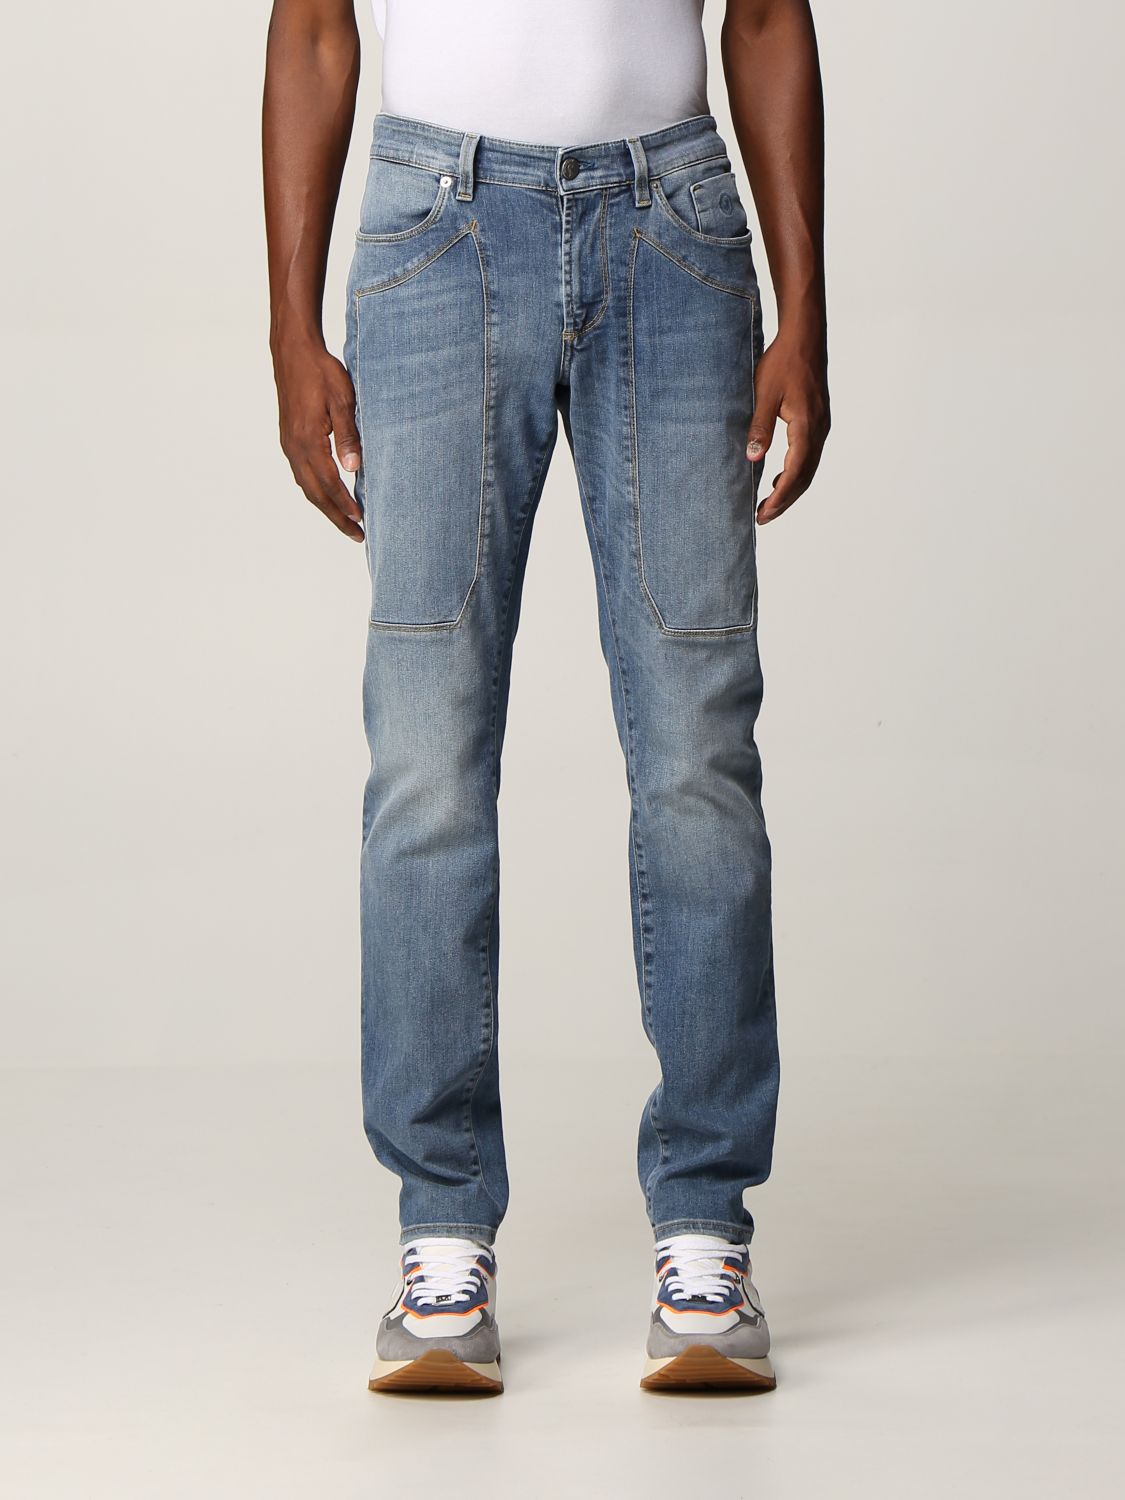 Jeans a 5 tasche Giglio.com Abbigliamento Pantaloni e jeans Jeans 